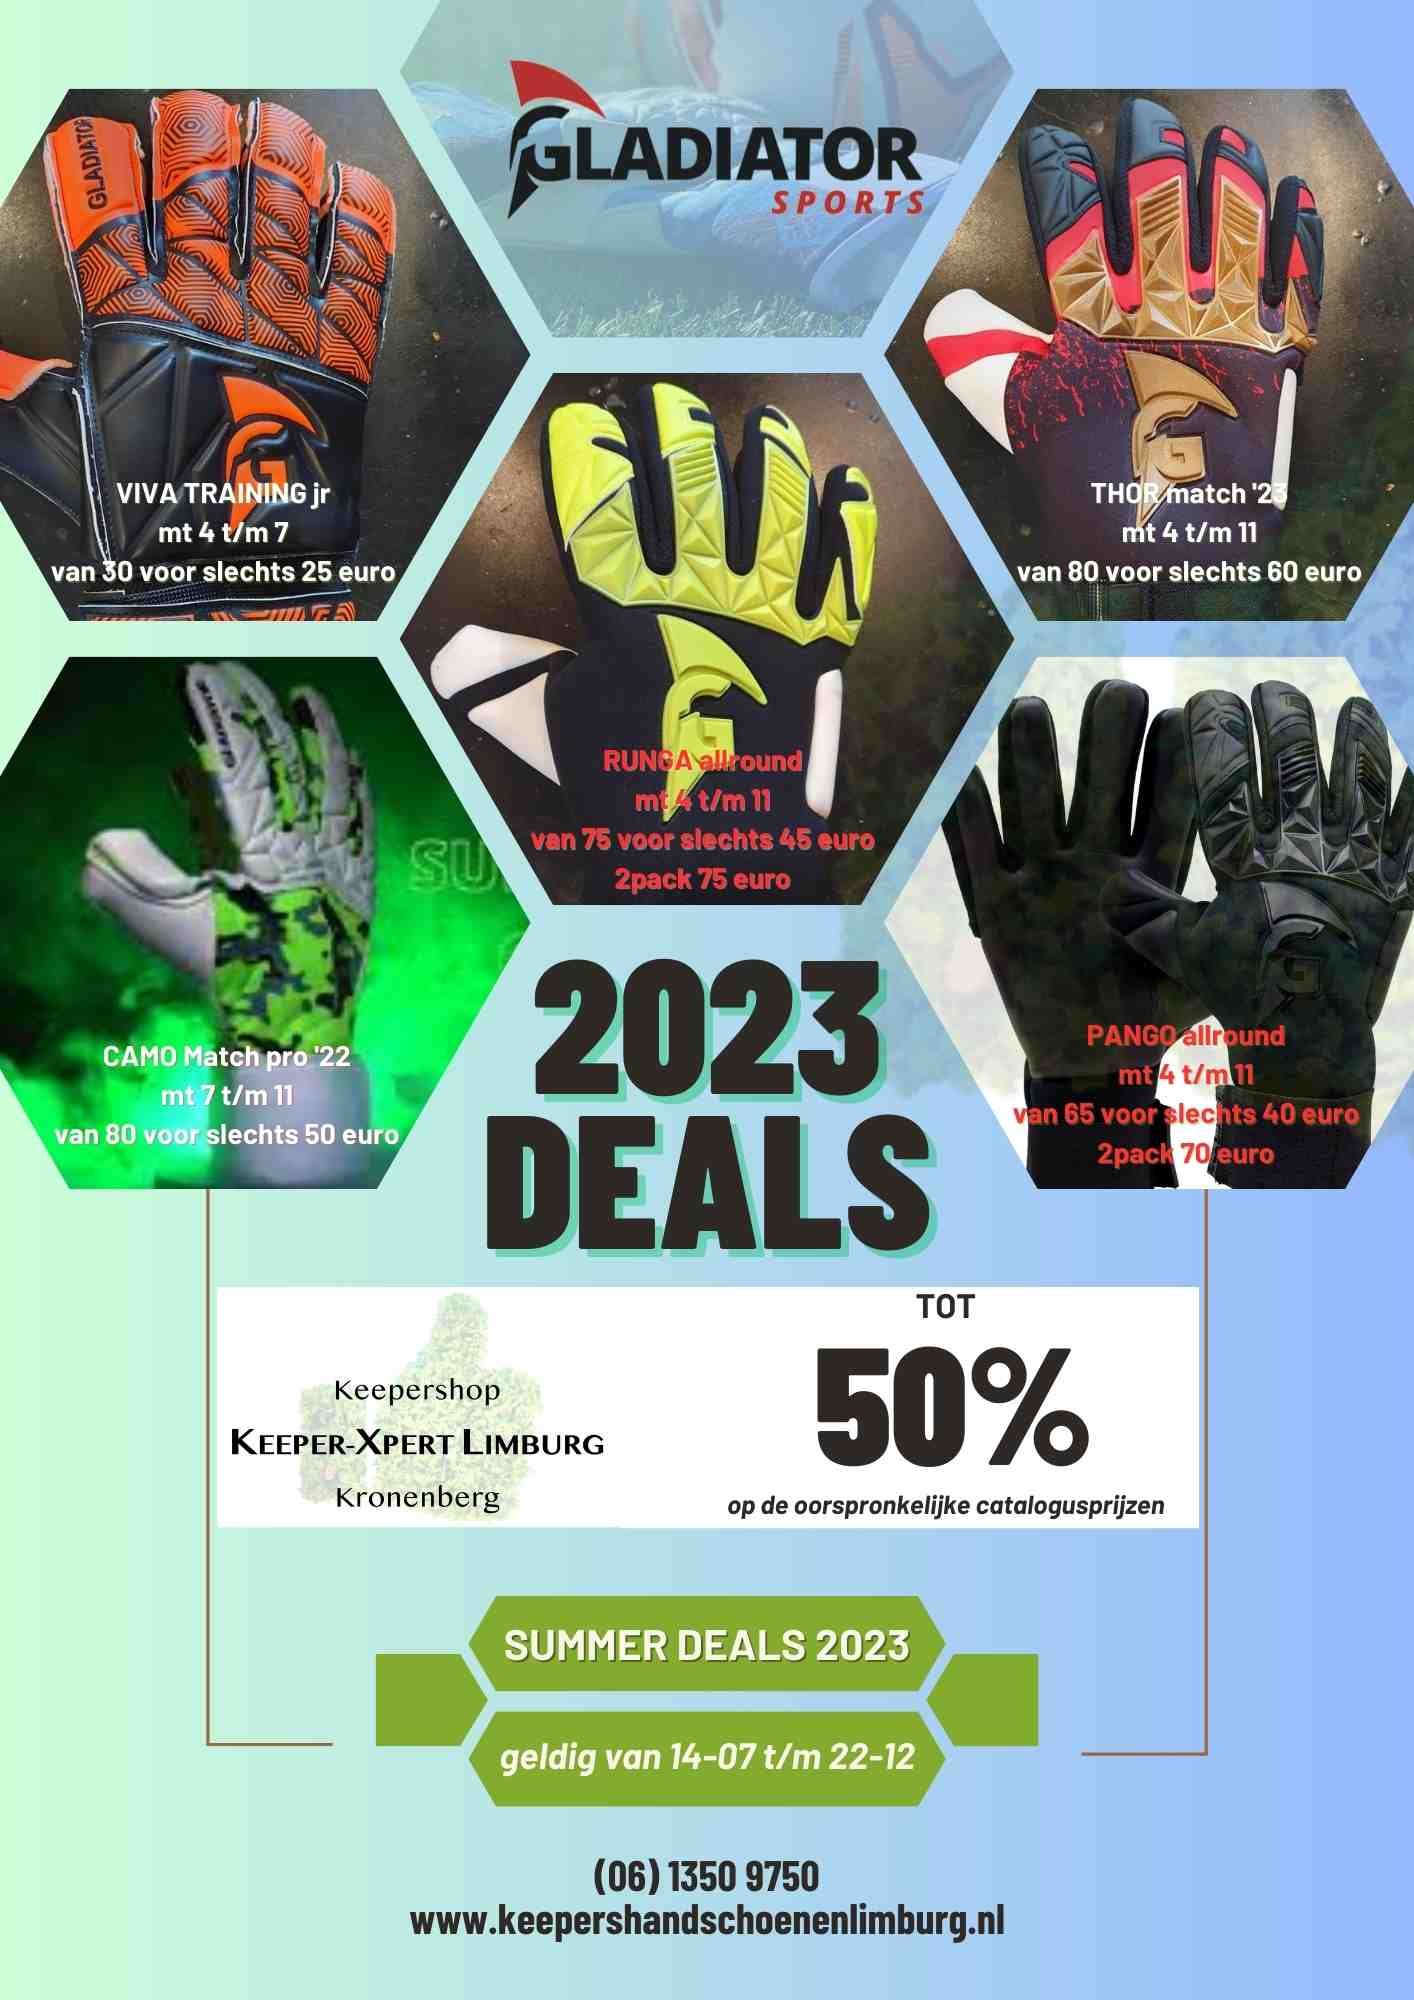 Summer deals Gladiator 2023